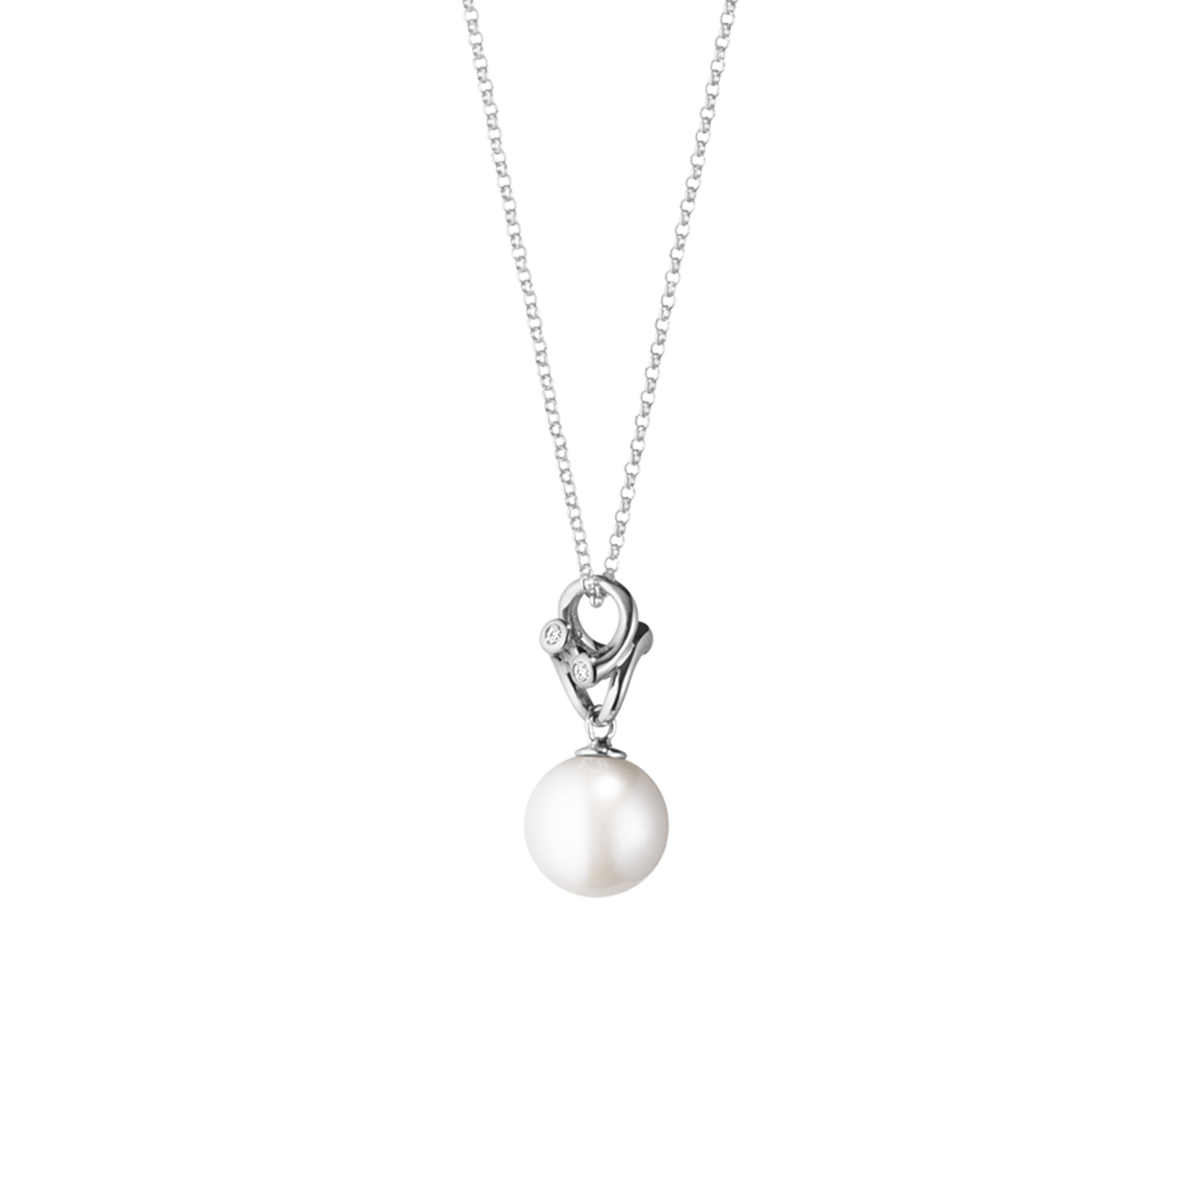 Magic halkæde med perle og diamant - hvidguld fra Georg Jensen